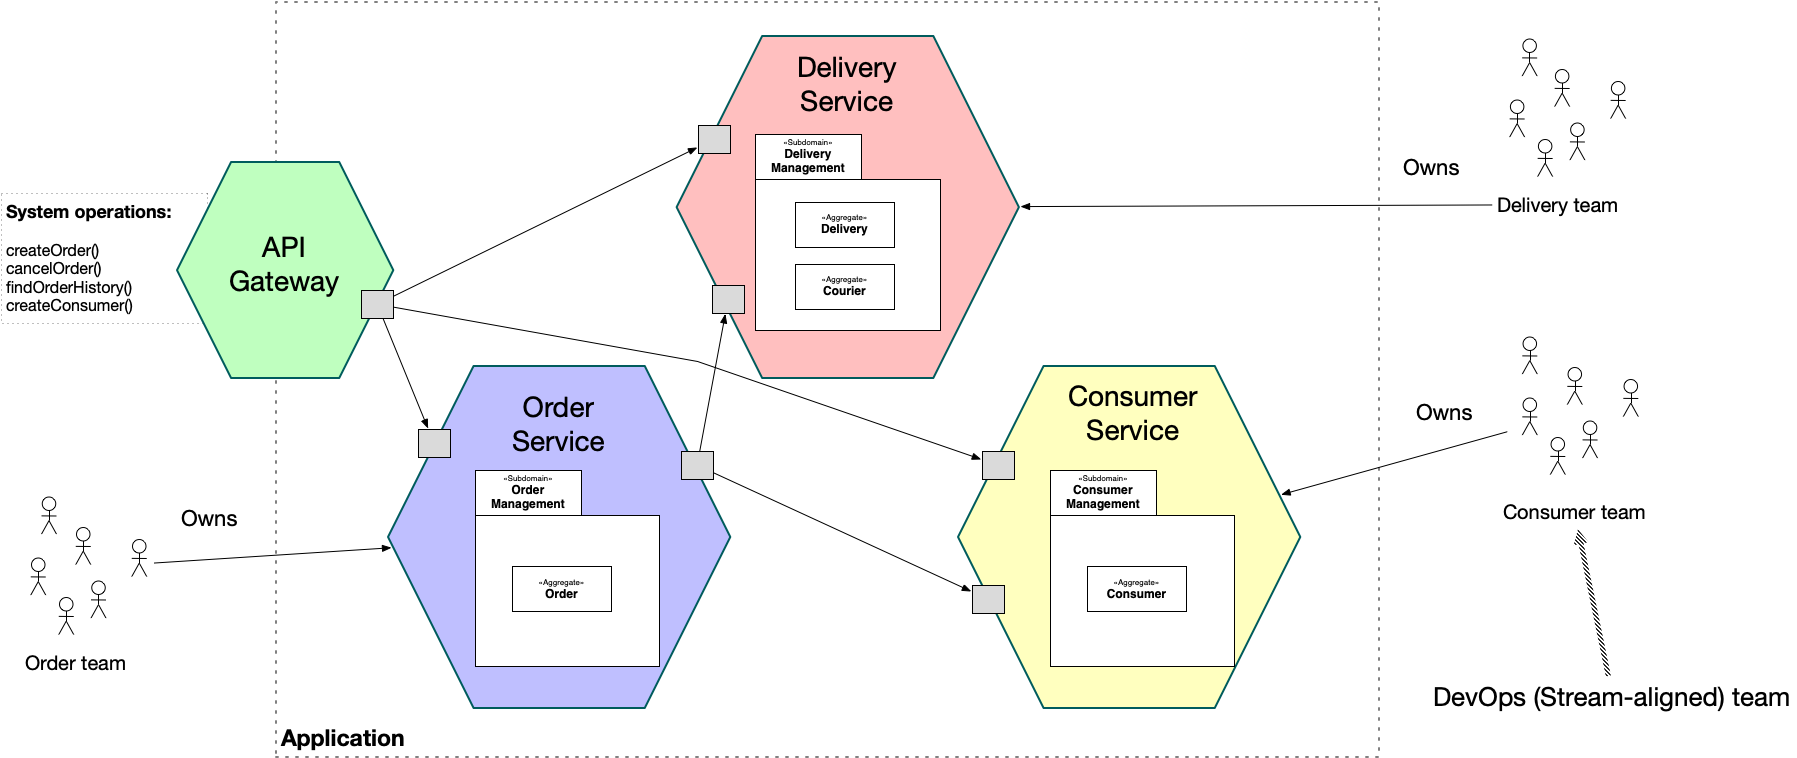 PDF) Enriched Service Descriptions Using Business Process Configurations.